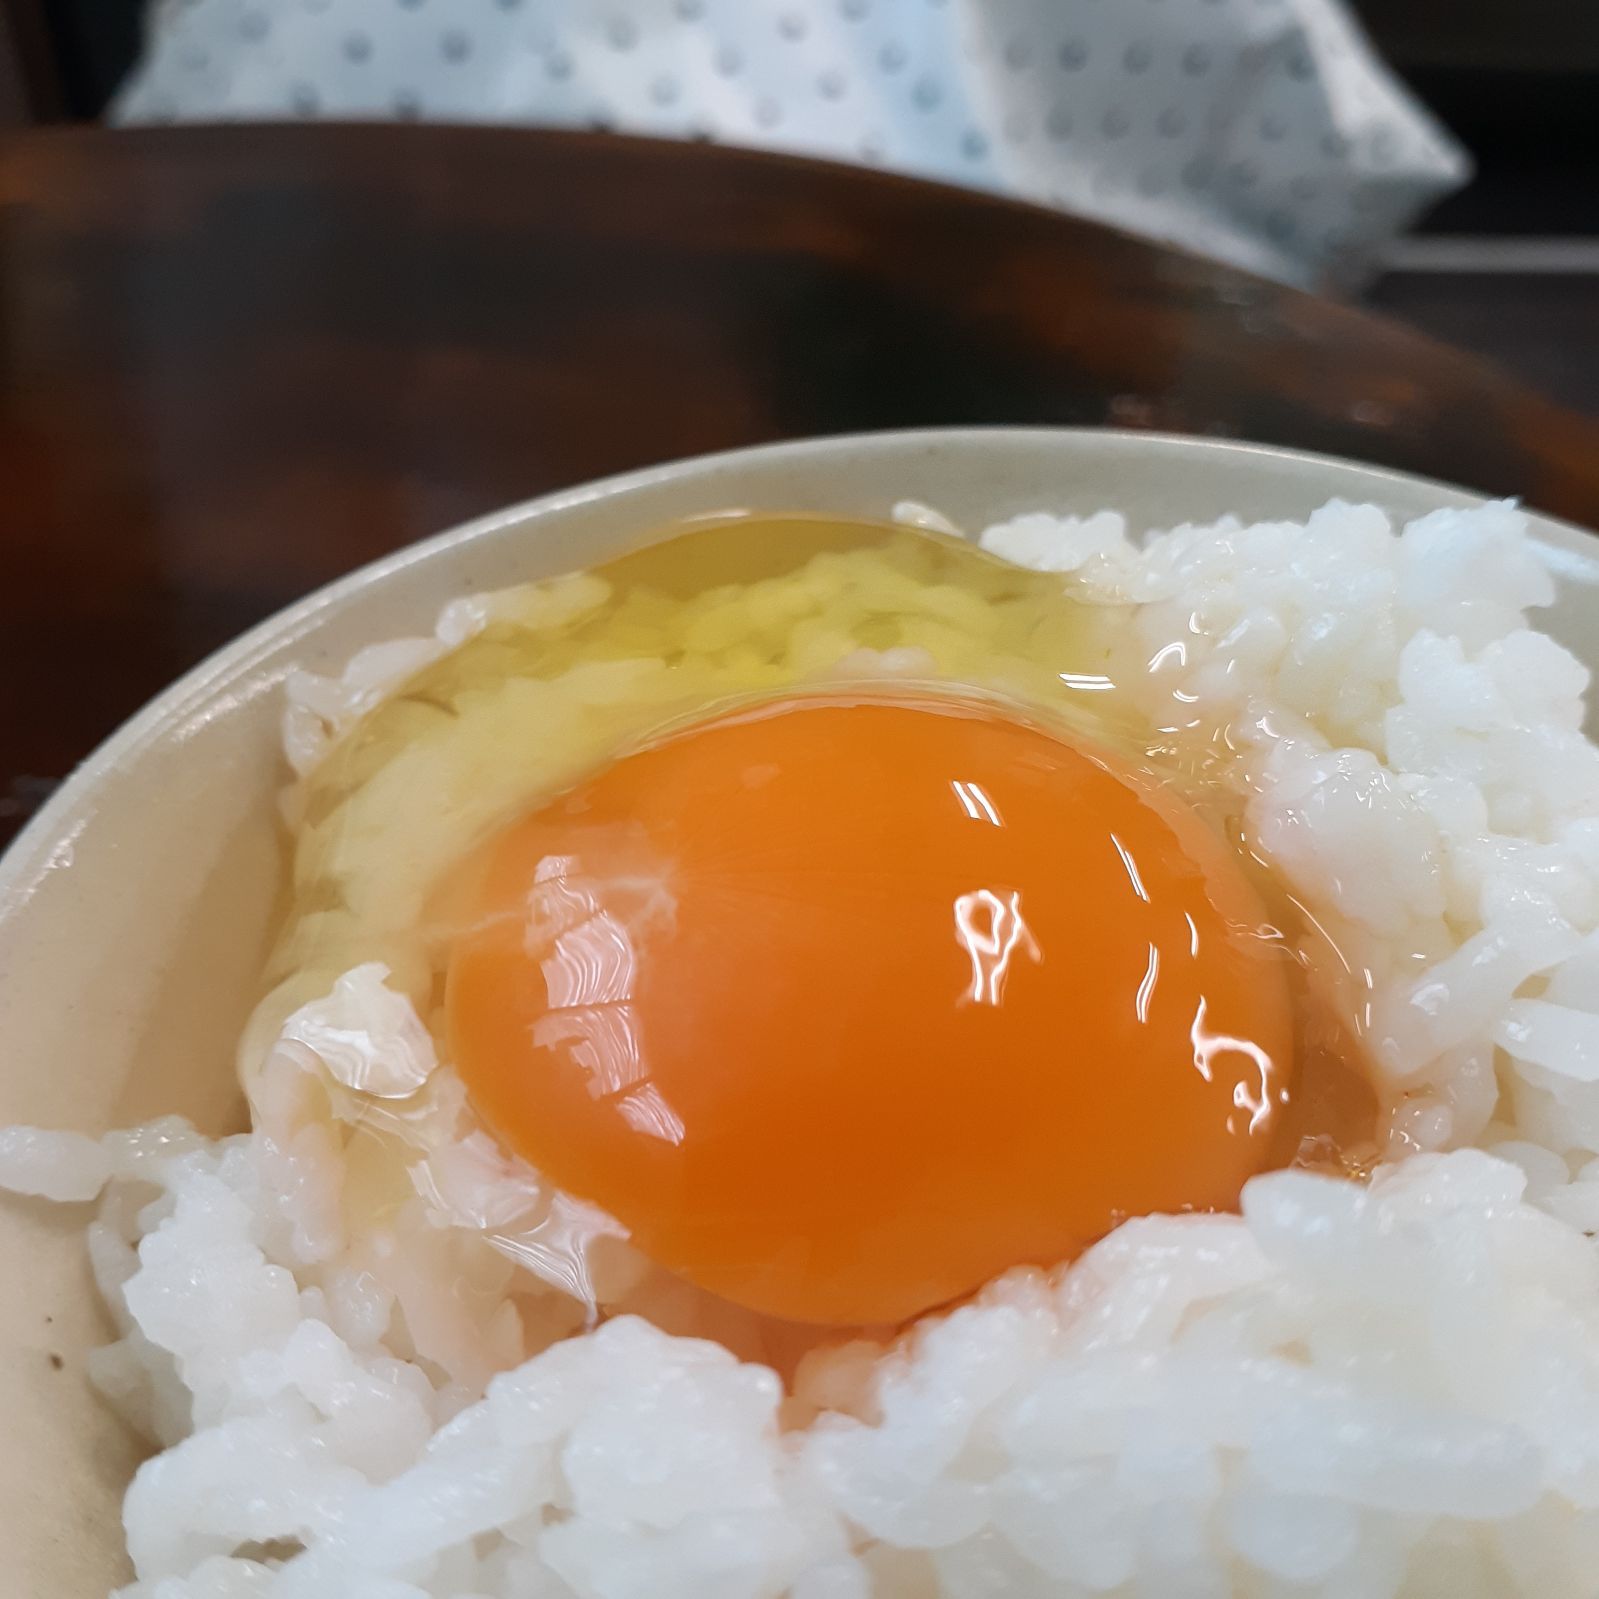 日本特価 - 平飼い卵50個7/8常温発送 - セール ブログ:1275円